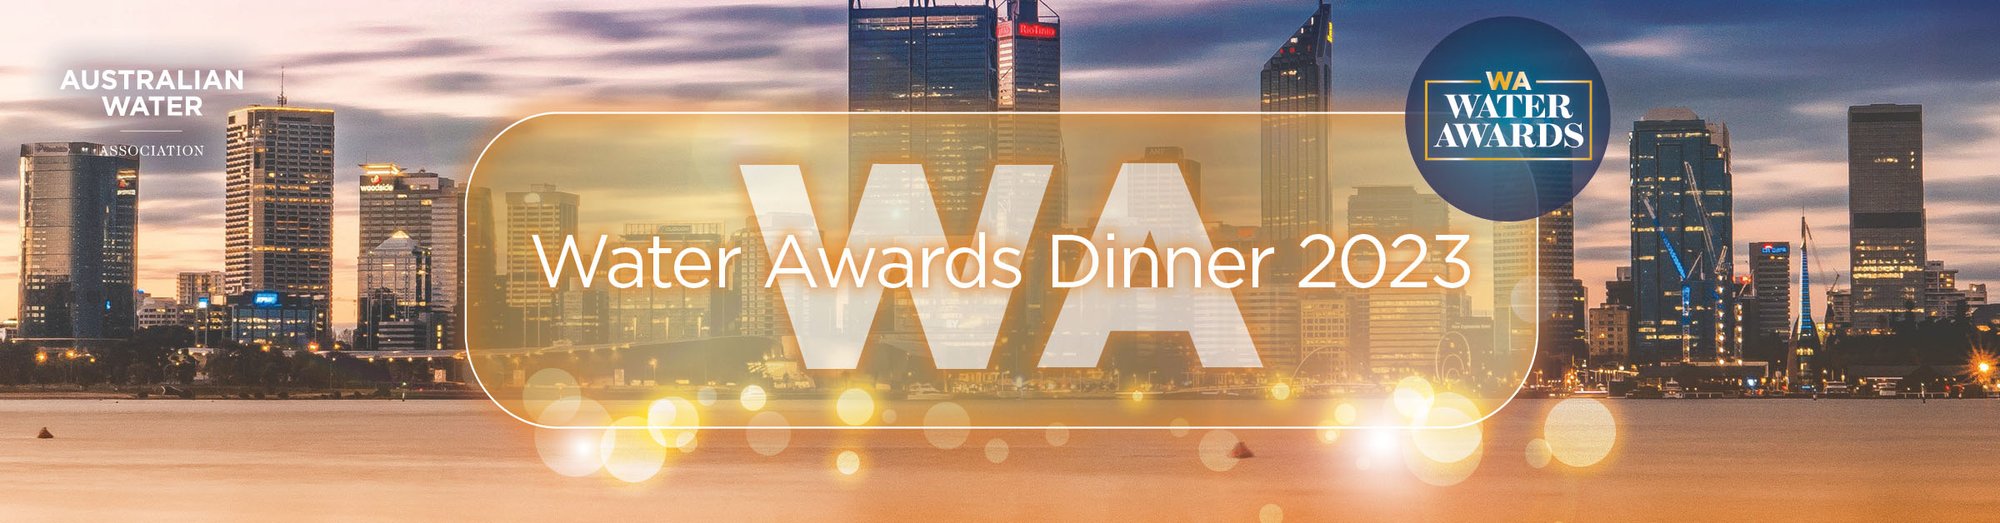 WA Water Awards & Dinner 2023_HubSpot Event Banner 1200x314px